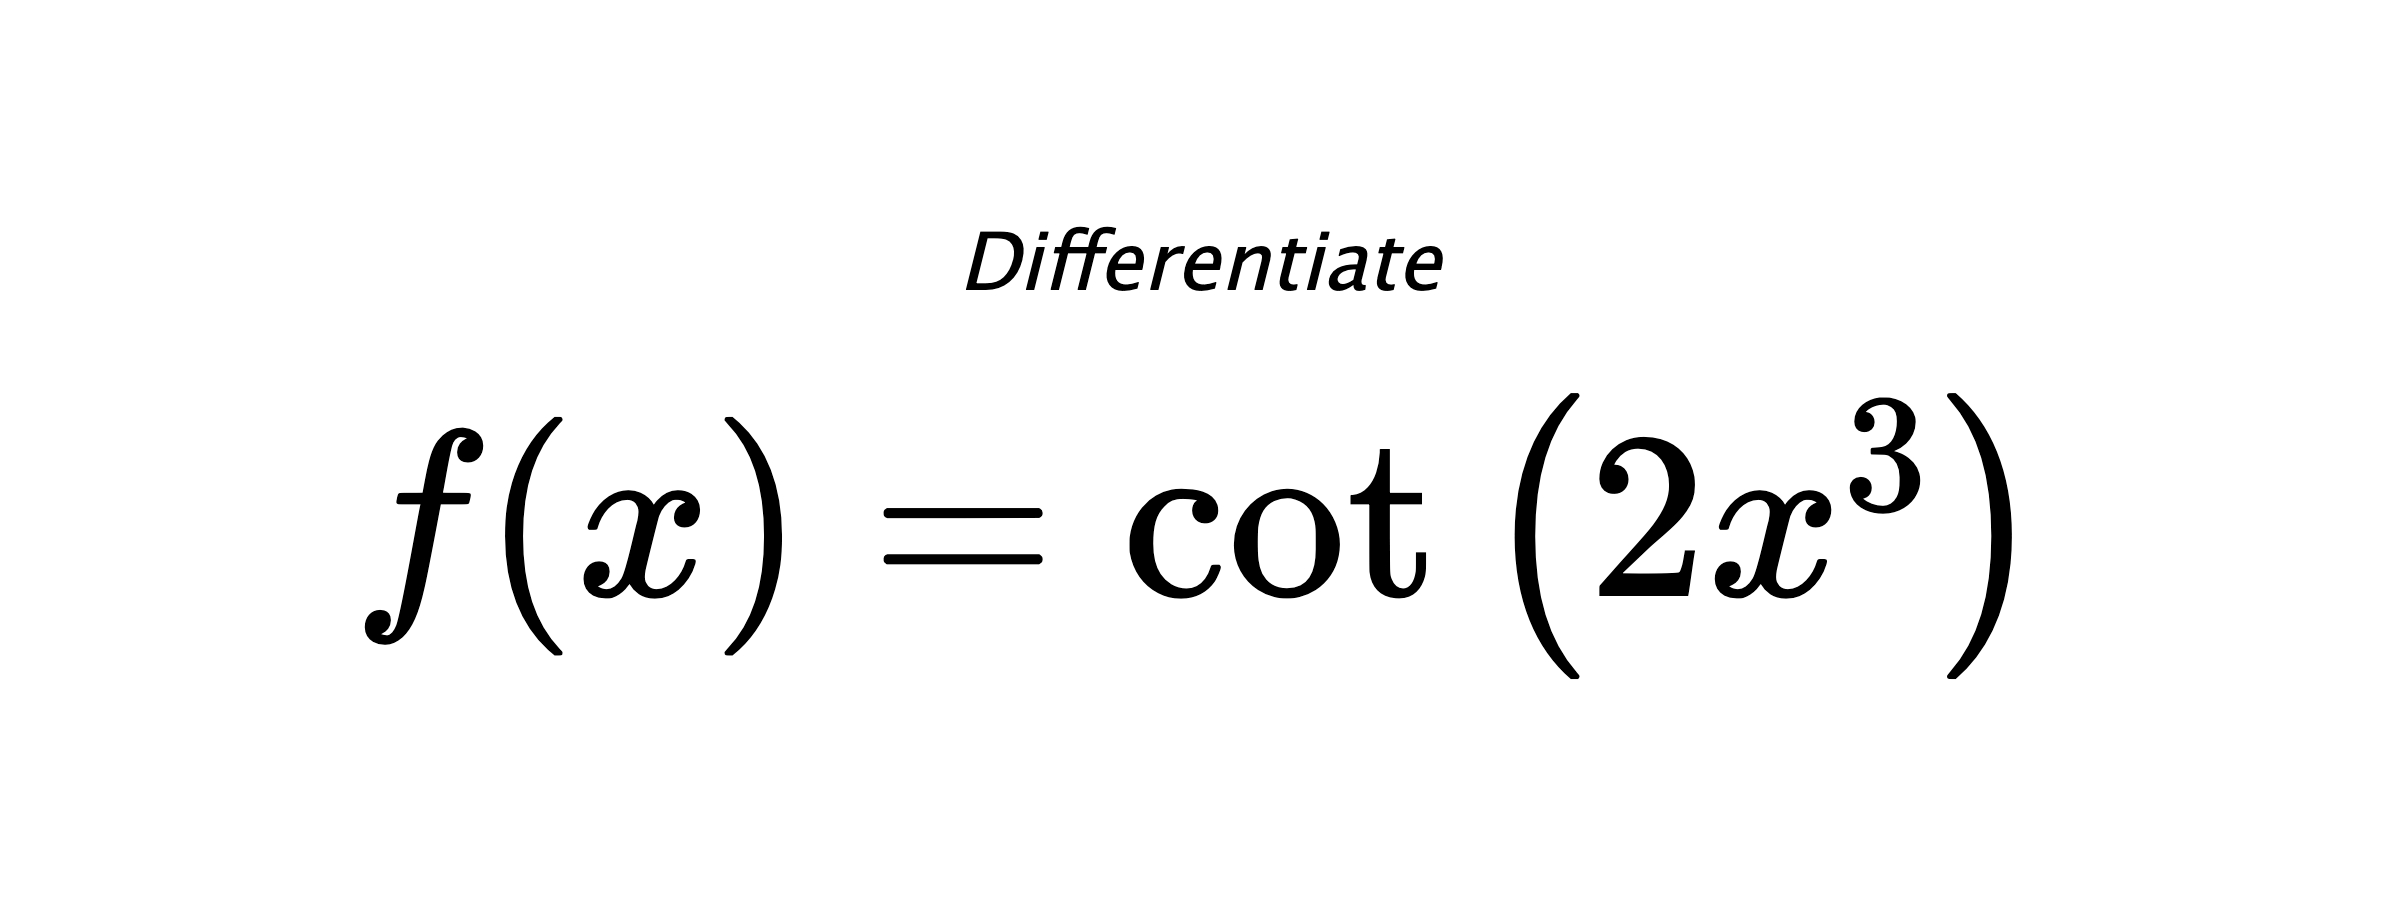 Differentiate $ f(x) = \cot{\left(2 x^{3} \right)} $